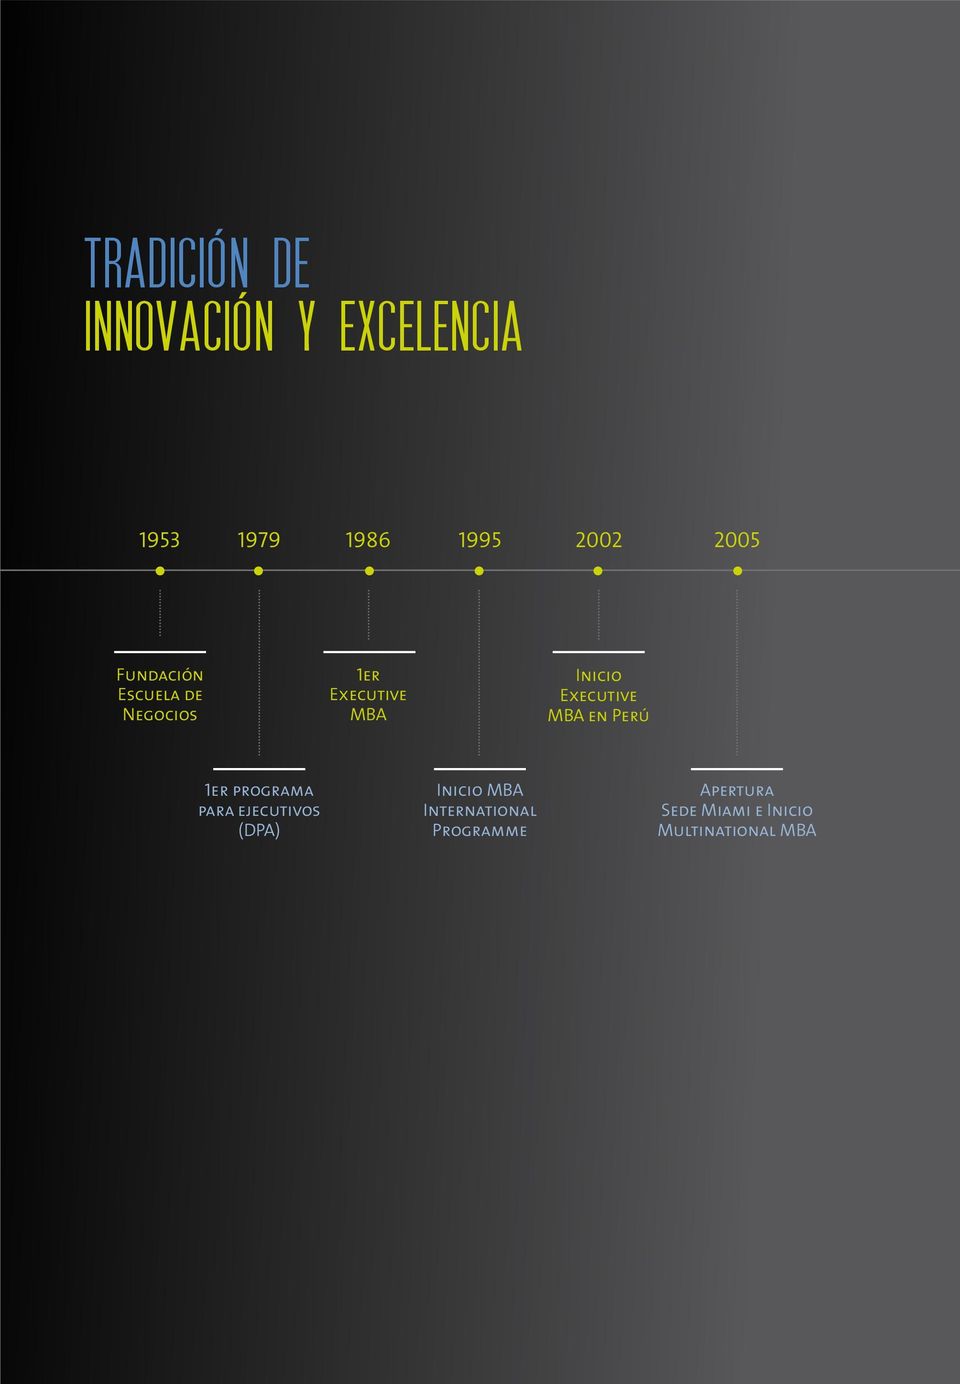 Inicio Executive MBA en Perú 1er programa para ejecutivos (DPA)